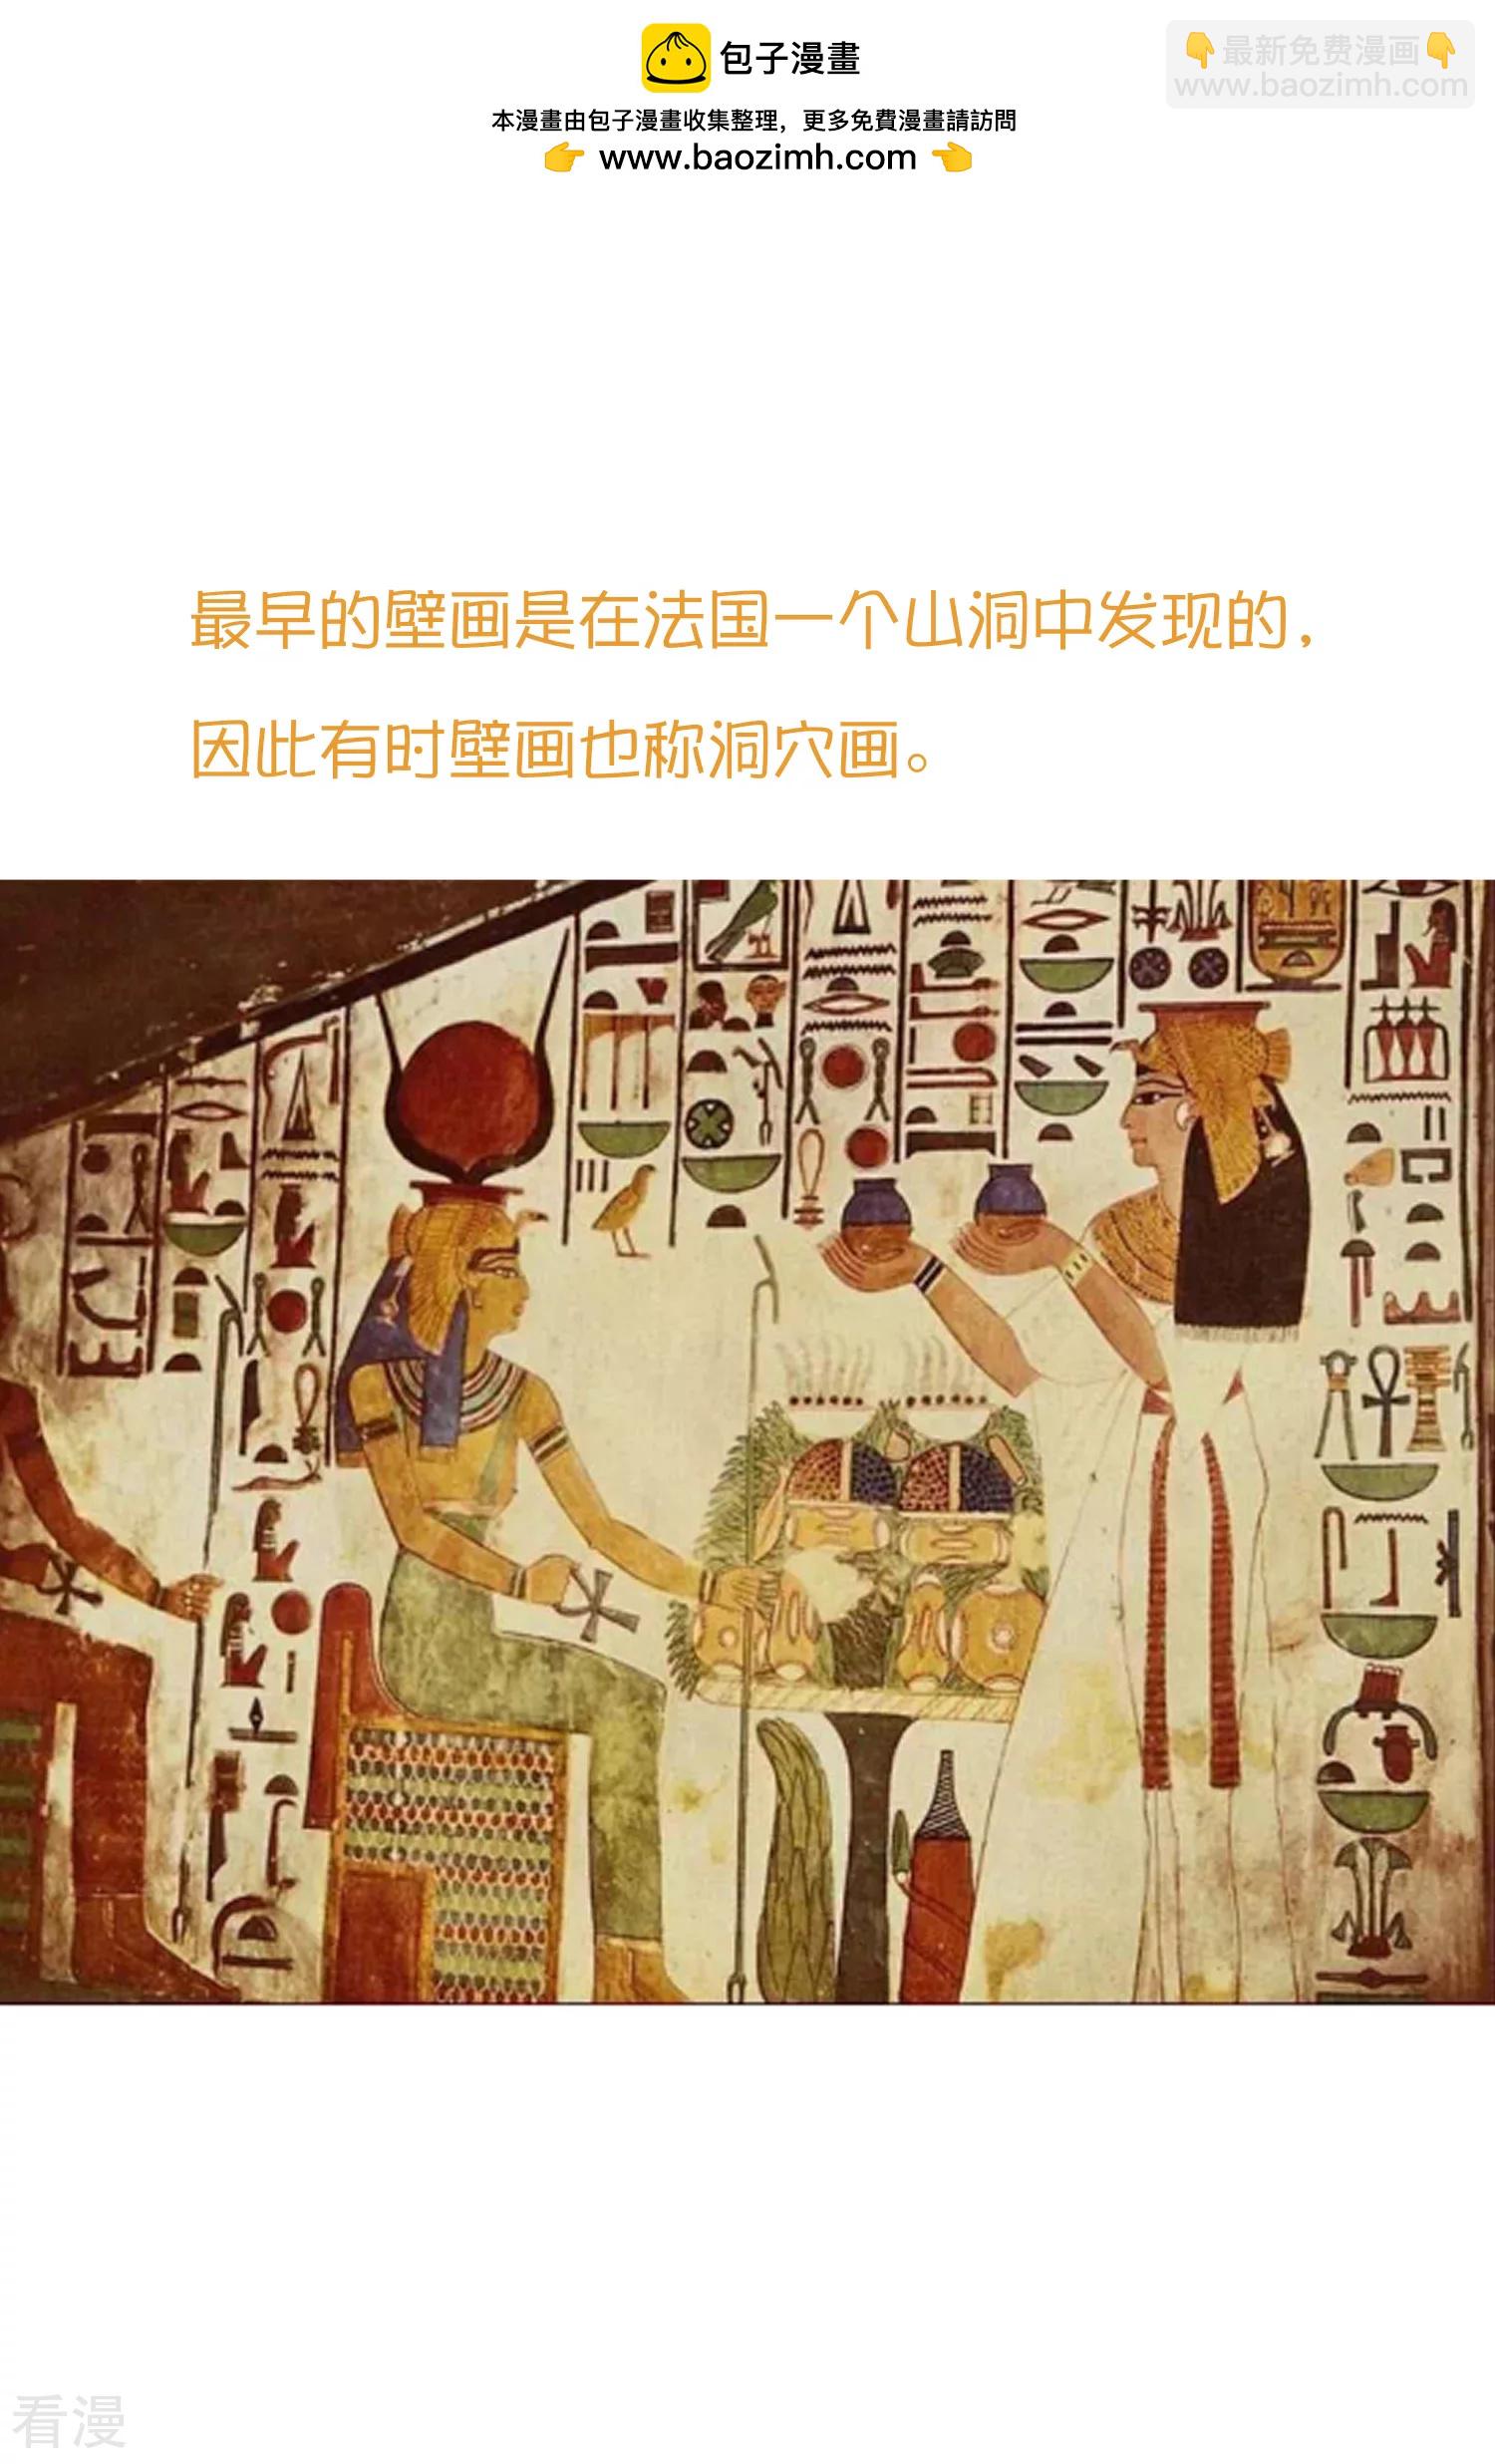 王的第一寵後 - 王的茶話會37 古埃及的壁畫文化 - 2